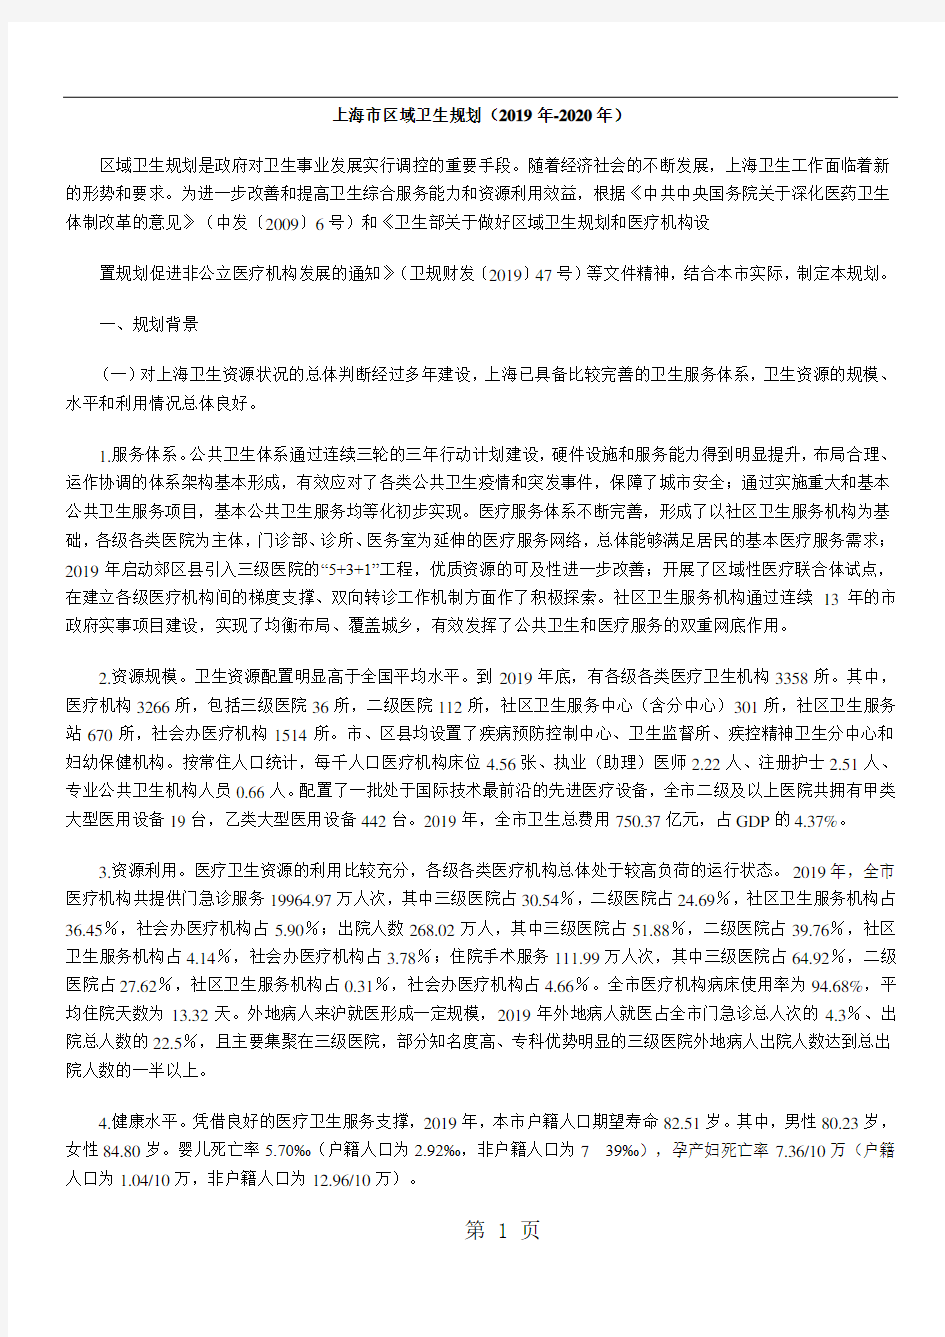 【政策法令】上海市区域卫生规划(2019年-2020年)共15页word资料